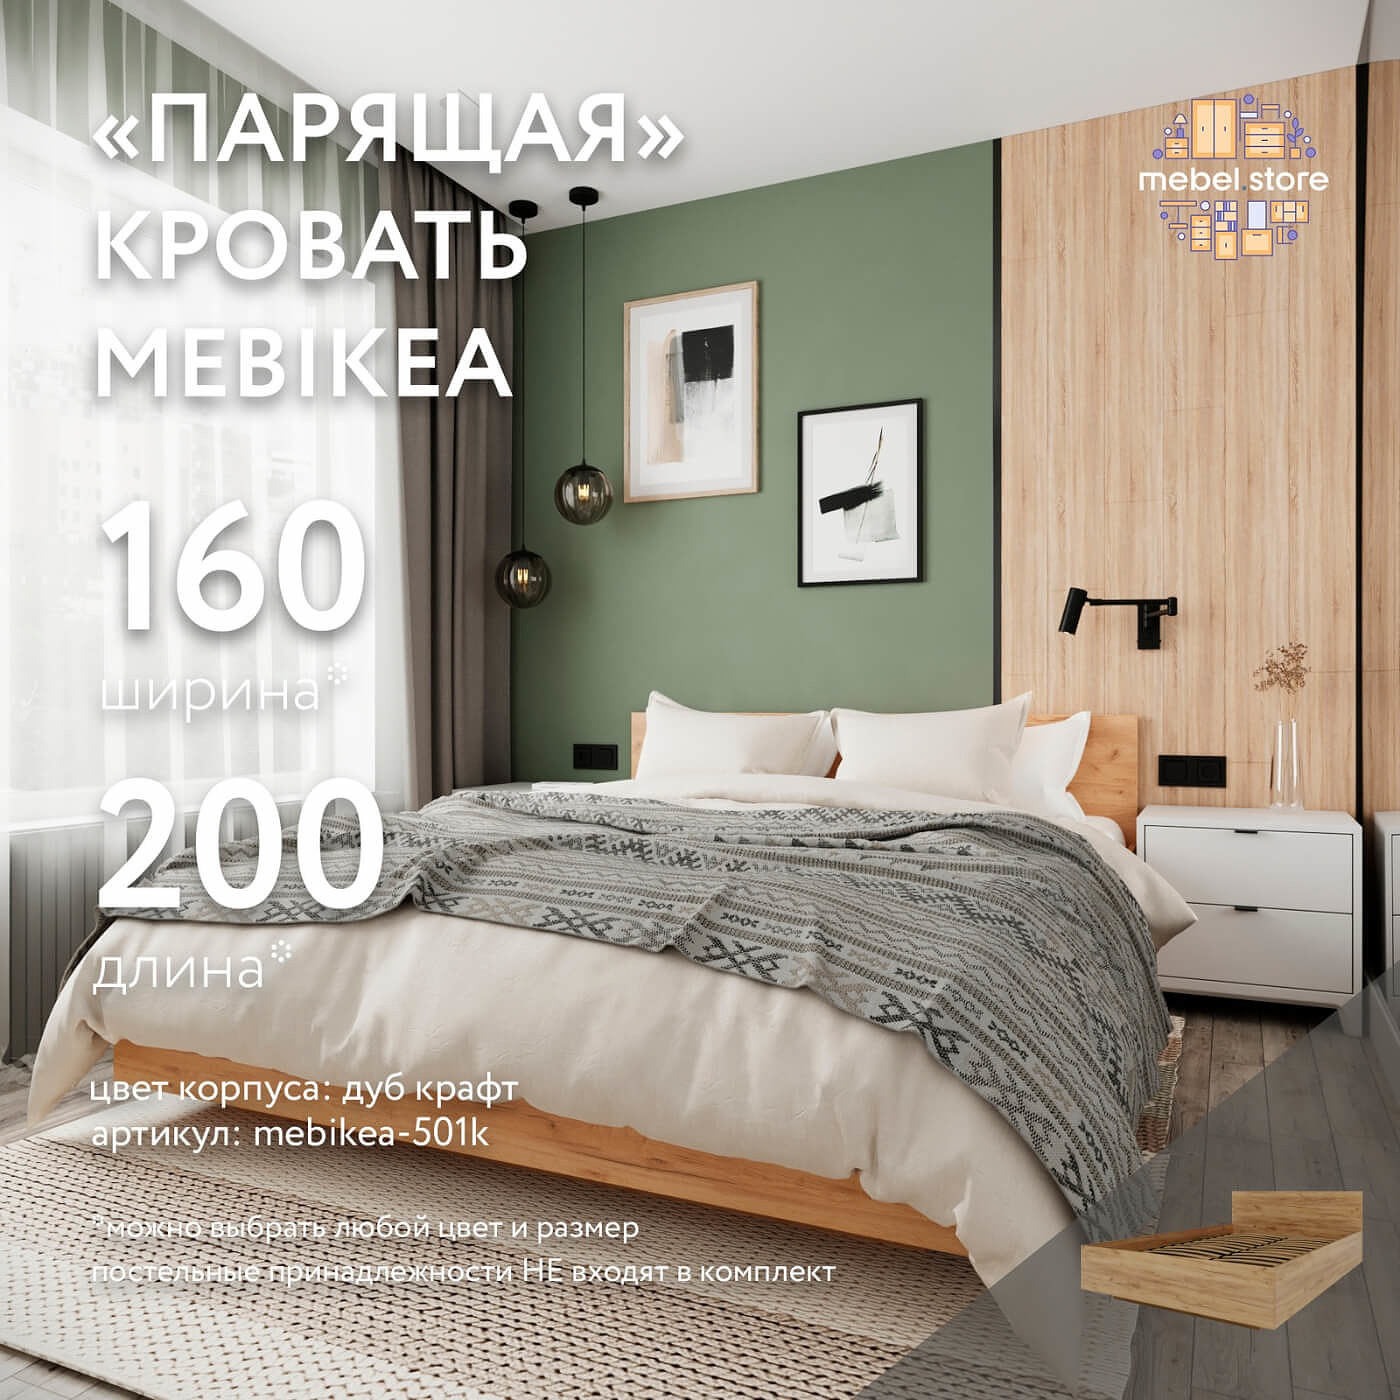 Кровать Mebikea-501k двуспальная минимализм - фото 1 large